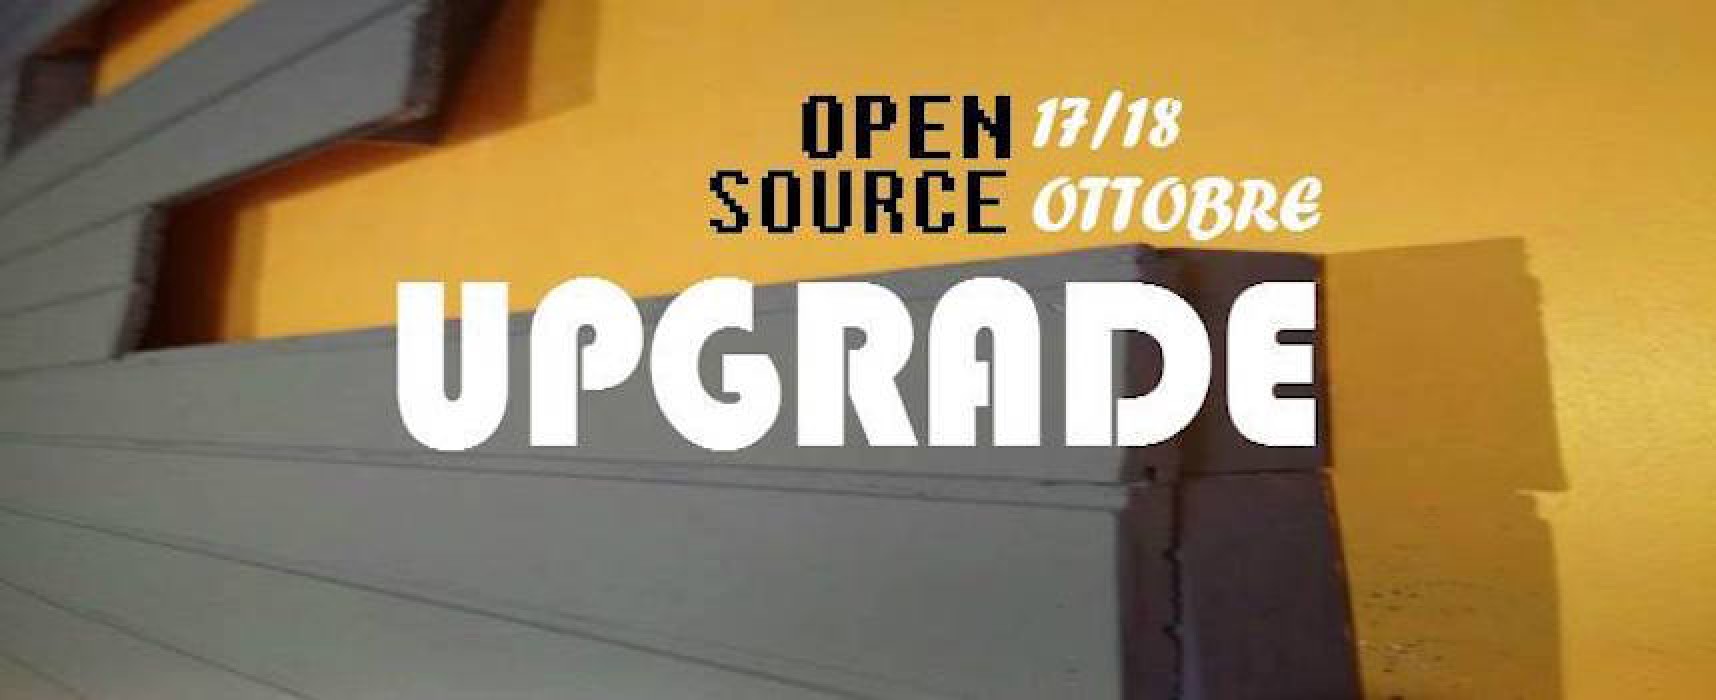 Open Source Upgrade, partono i festeggiamenti per il “restyling” del circolo